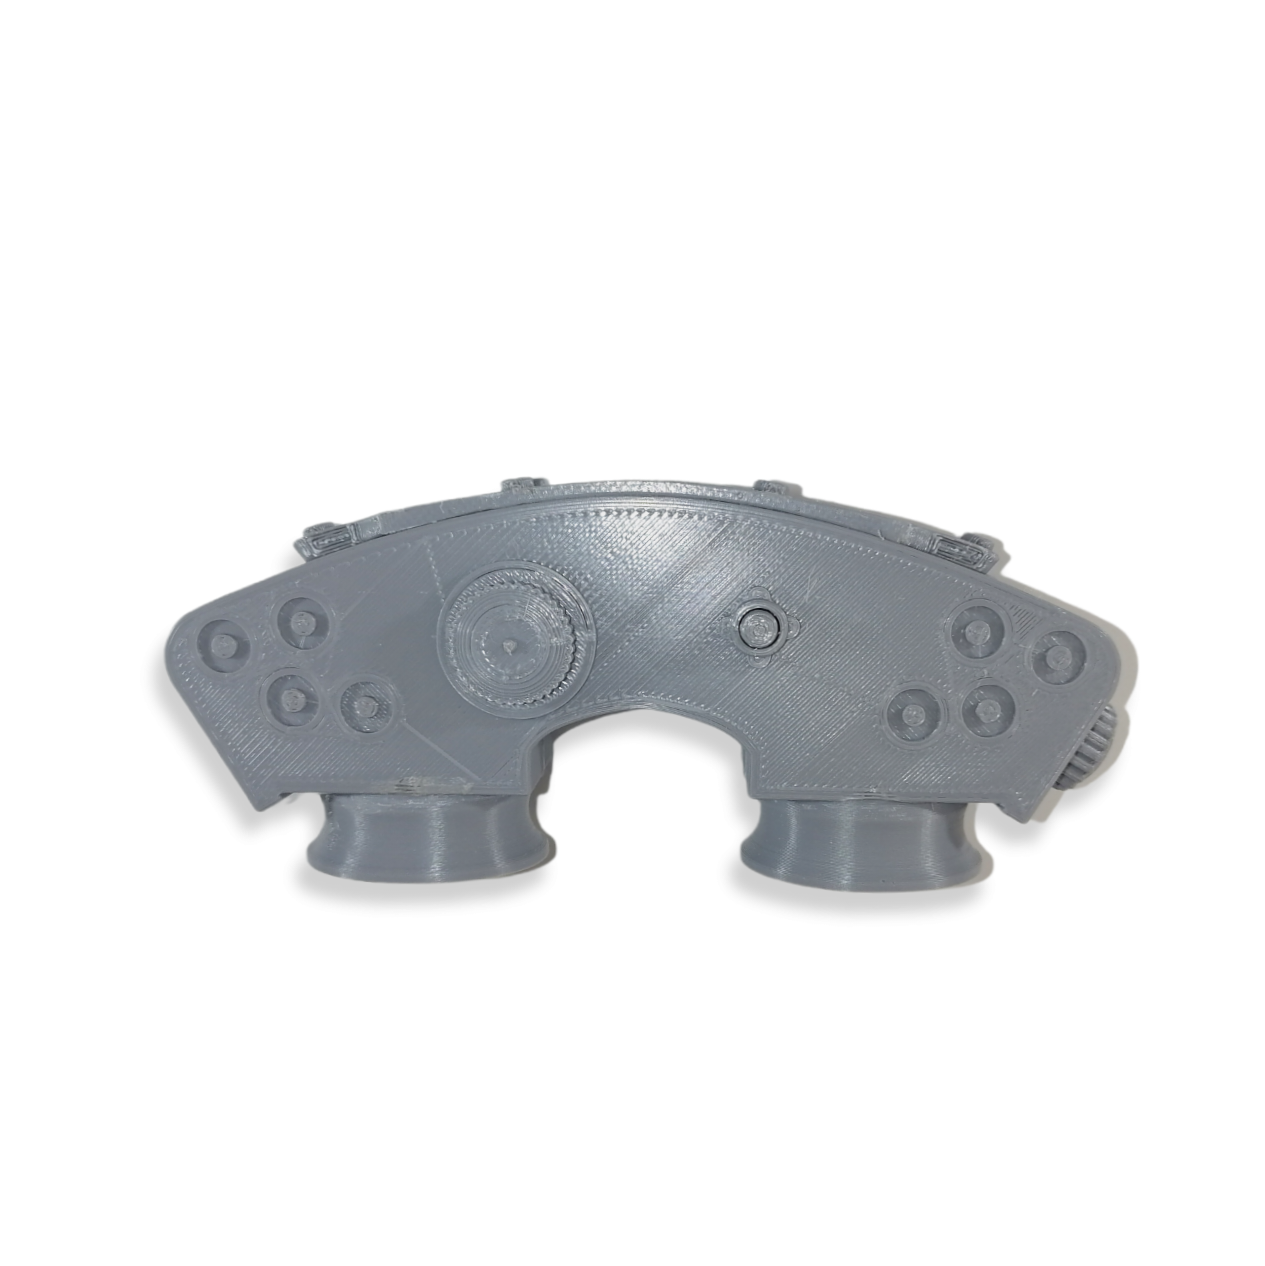 Kenobi Binoculars - Sci-Fi Prop - 3D Printed Replica